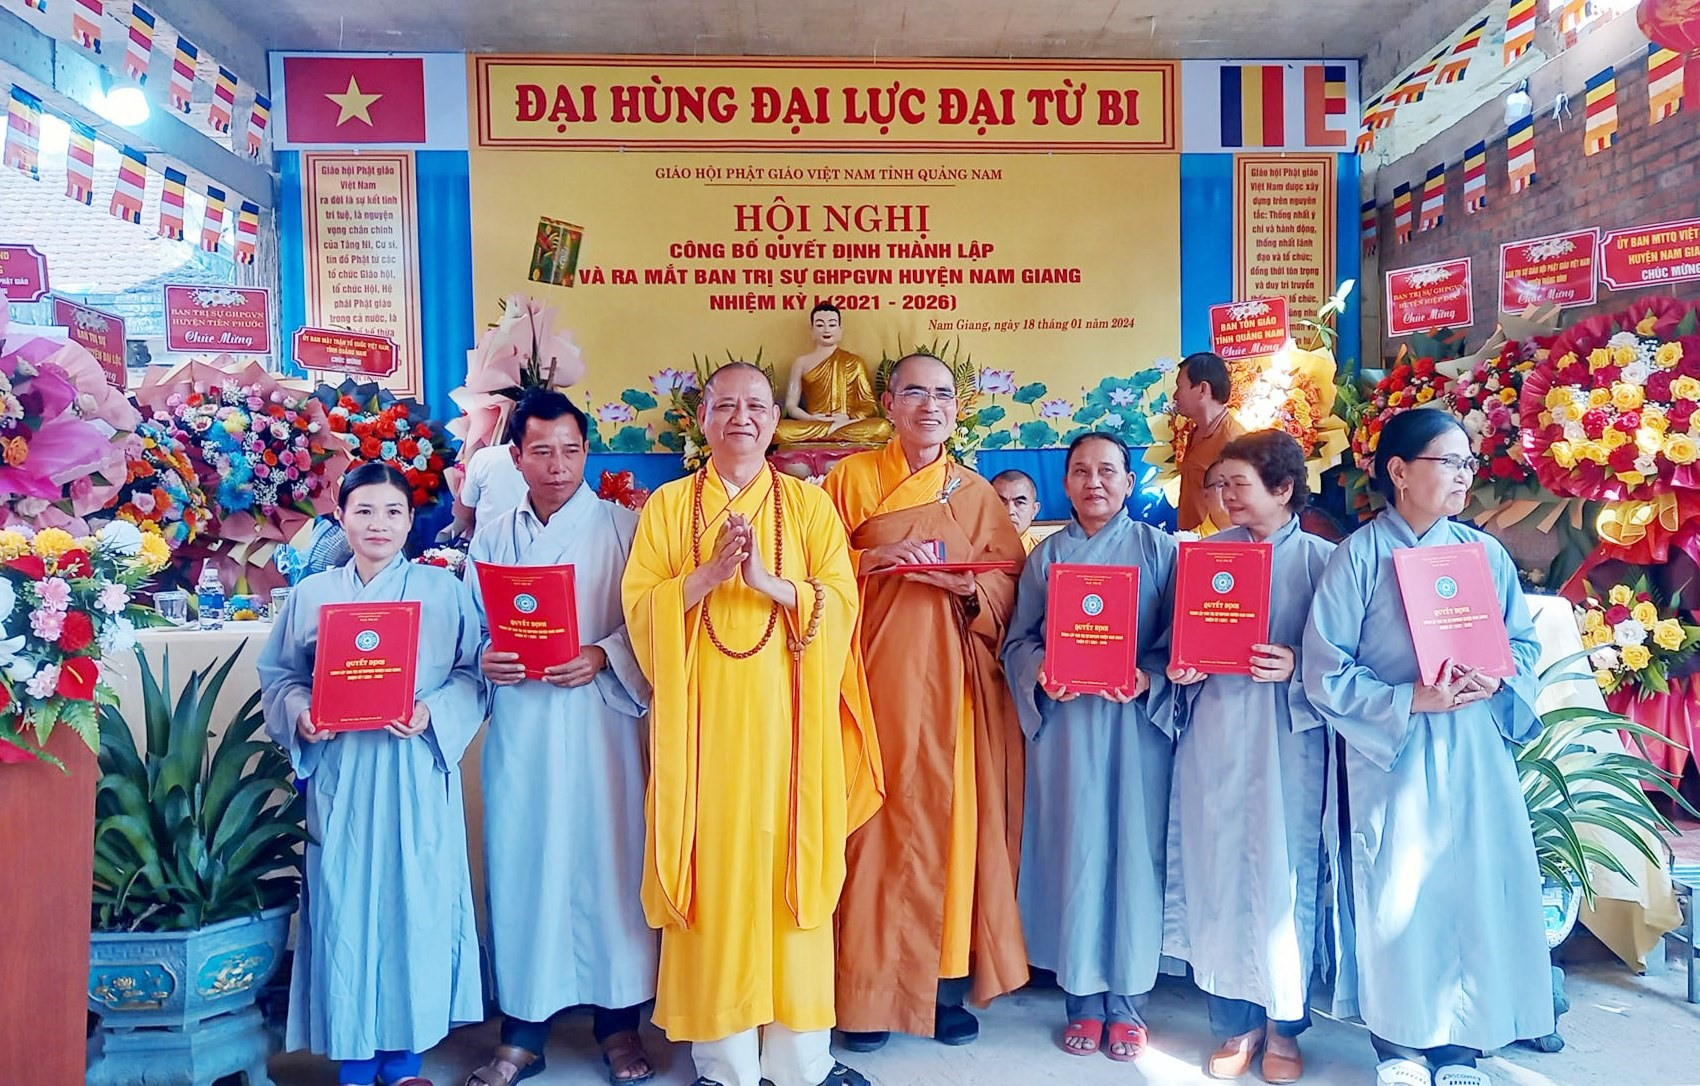 quyết định thành lập và ra mắt Ban Trị sự Giáo hội Phật giáo Việt Nam huyện Nam Giang.